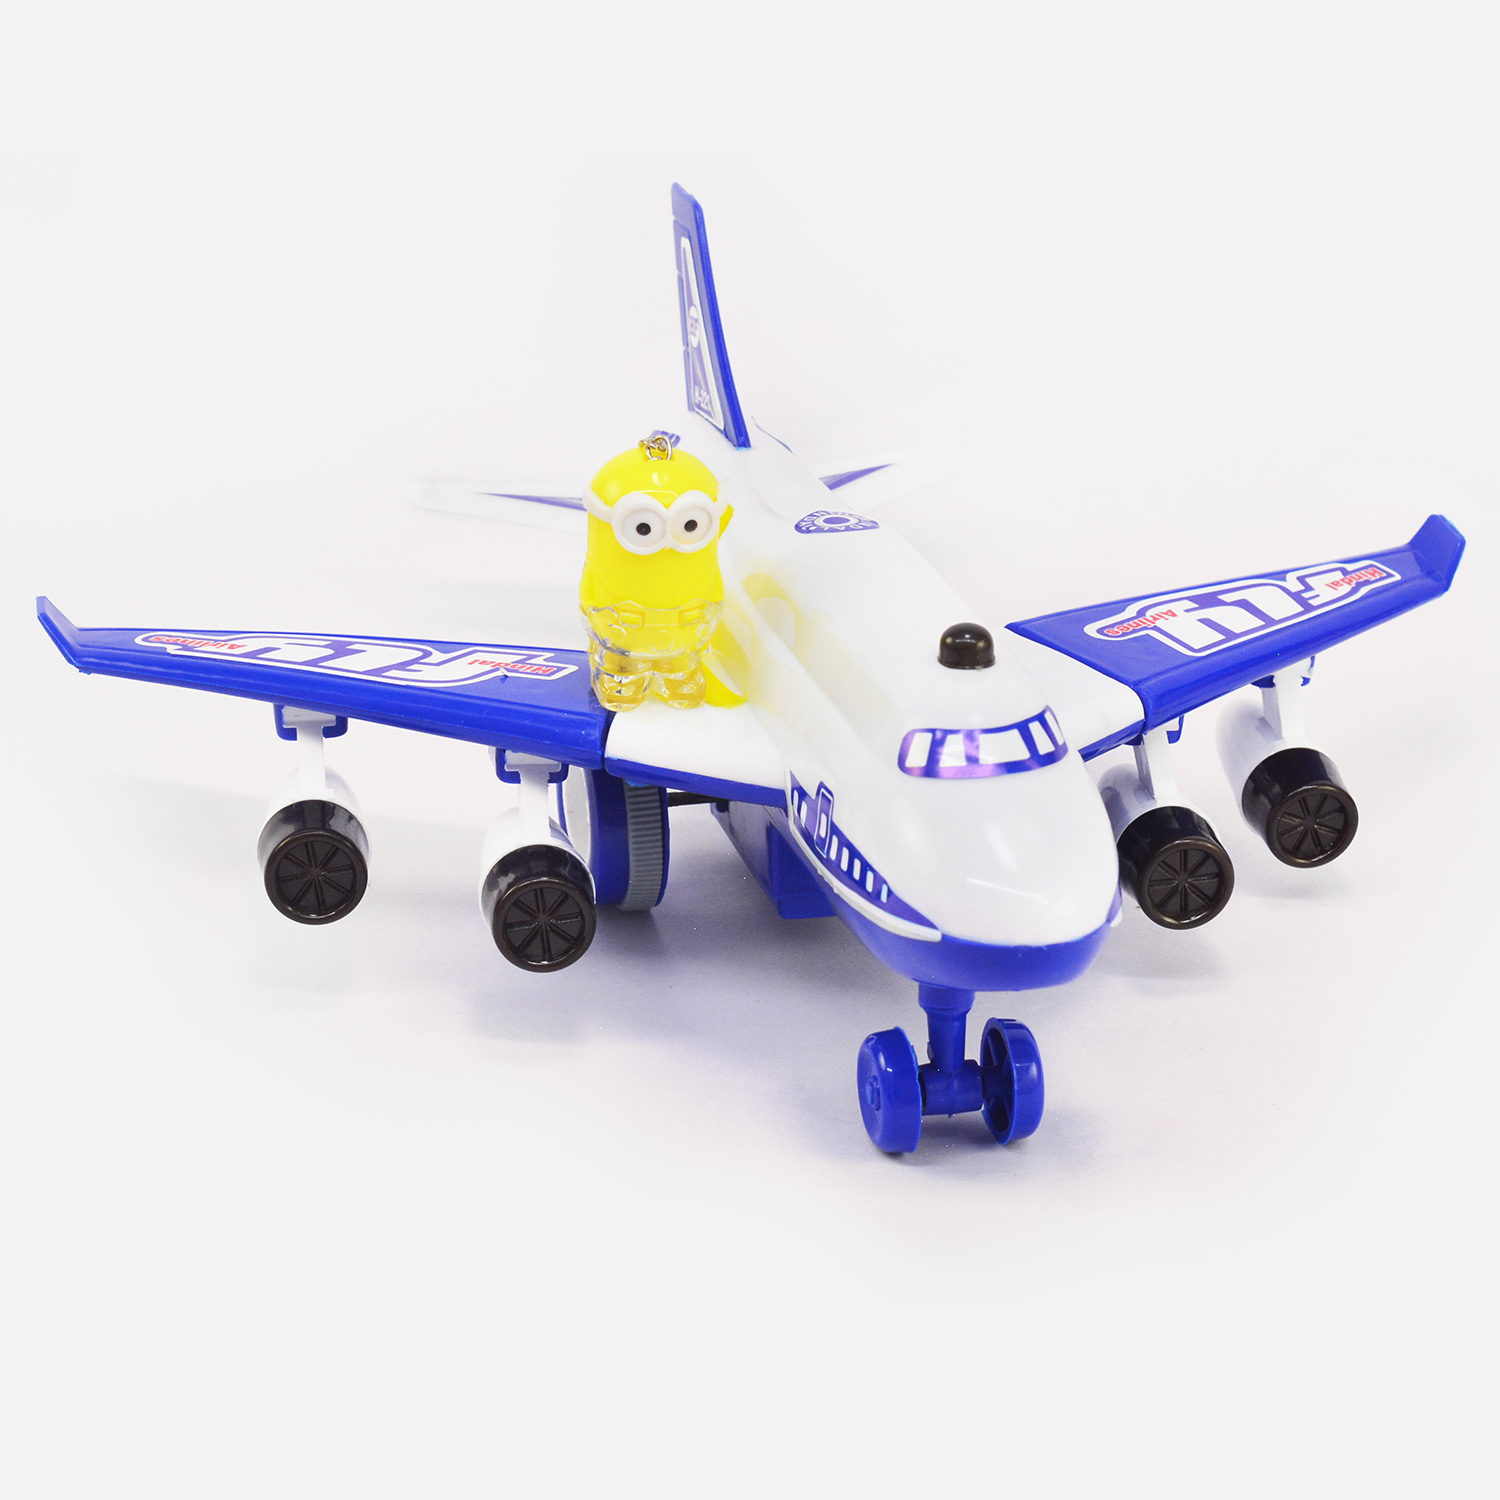 Super Minion Rakhi with Gorgeous Kids Airplane Toy